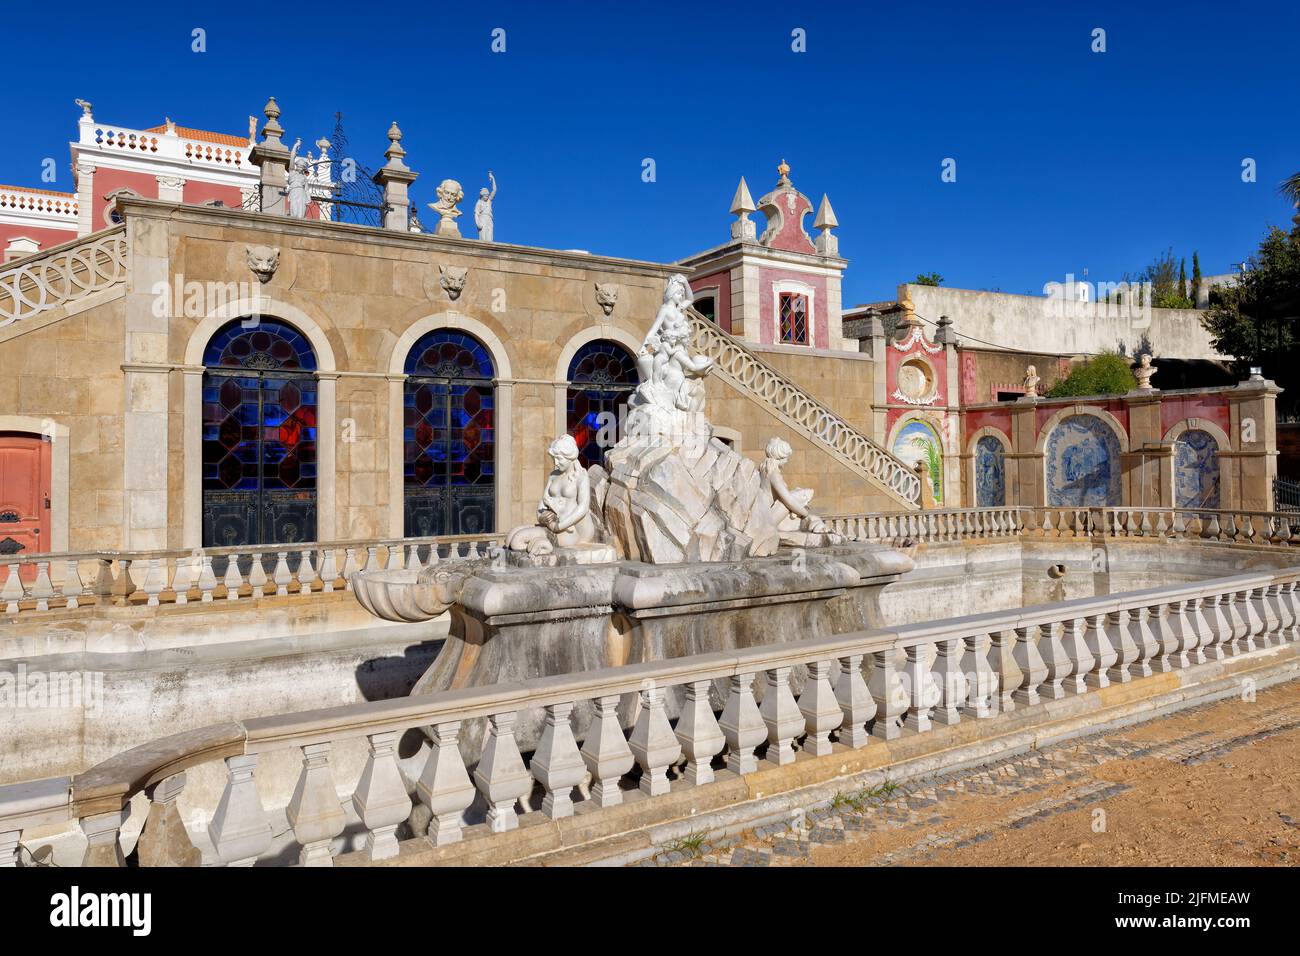 Fountain in Estoi Palace garden, Estoi, Loule, Faro district, Algarve, Portugal Stock Photo